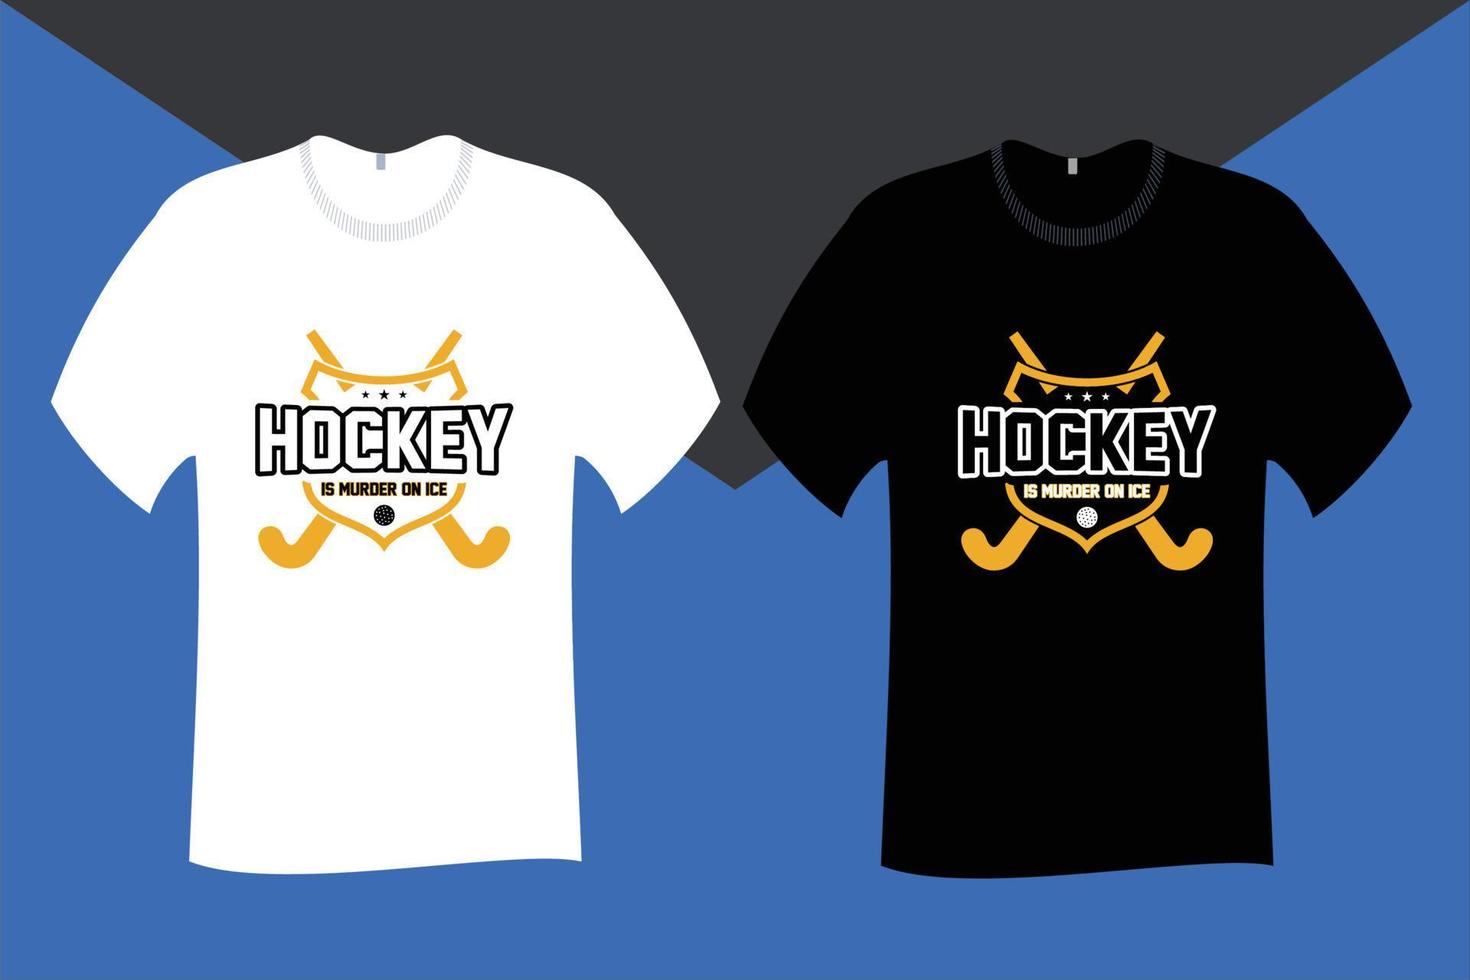 hockey is moord Aan ijs t overhemd ontwerp vector